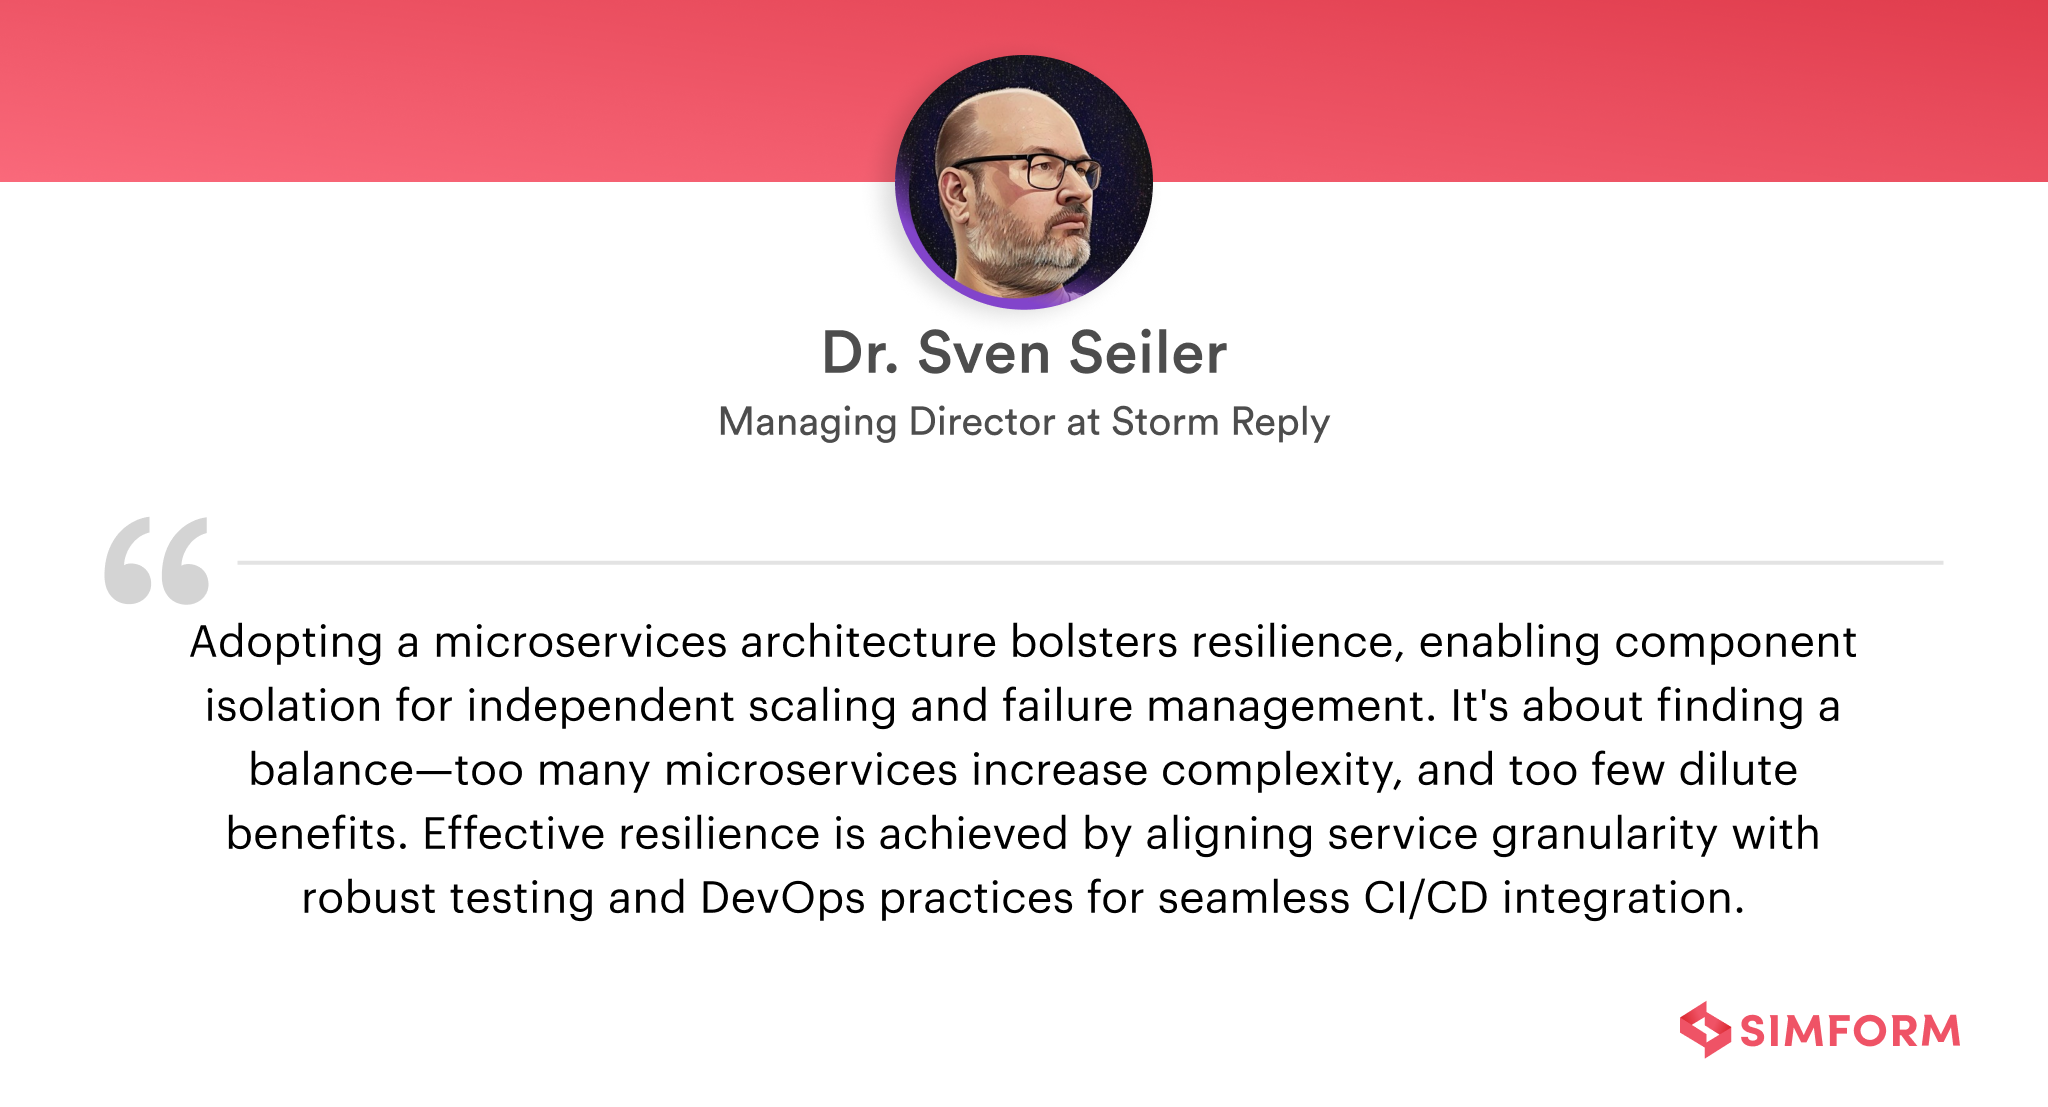 Dr. Sven Seiler-Microservice